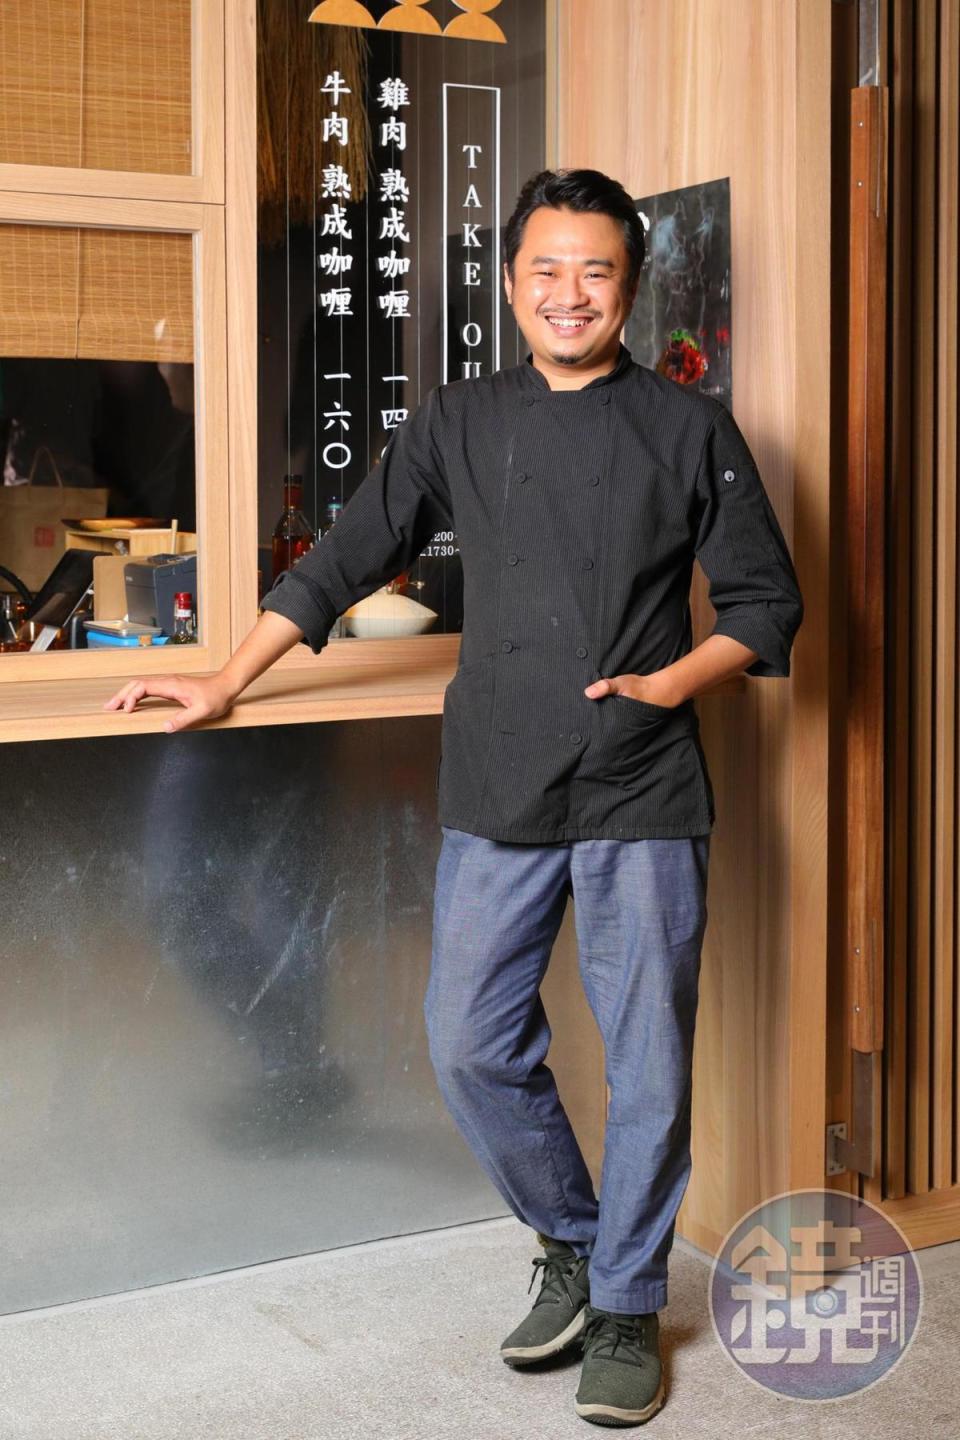 老闆陳子洋曾獲得2017聖沛黎洛年輕廚師東北亞區域賽冠軍。